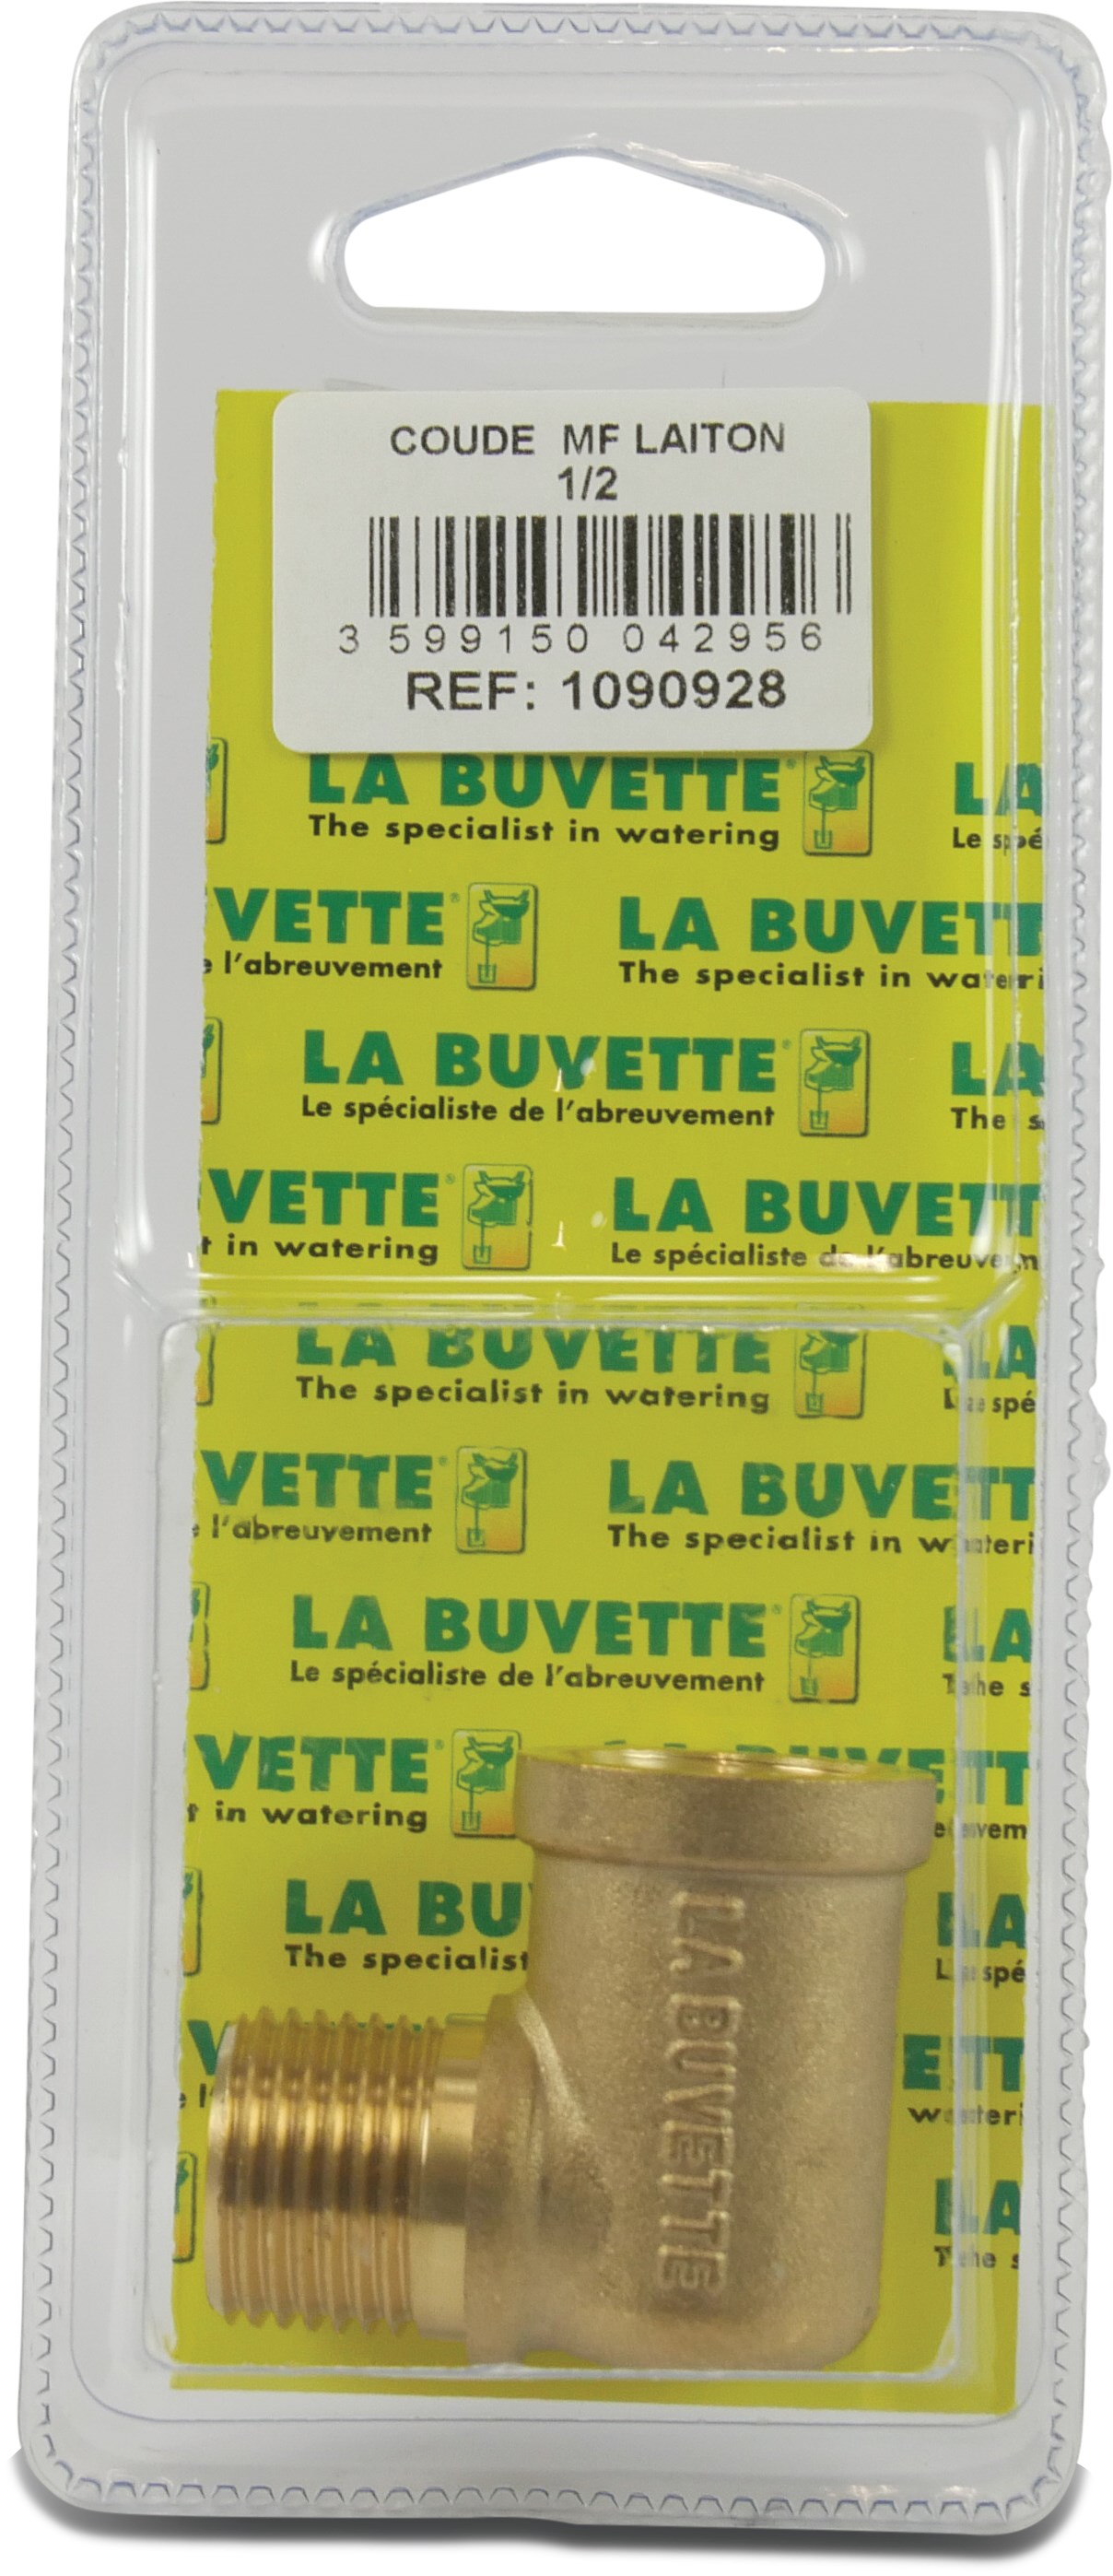 La Buvette Bent junction 1/2 GZ blister pack